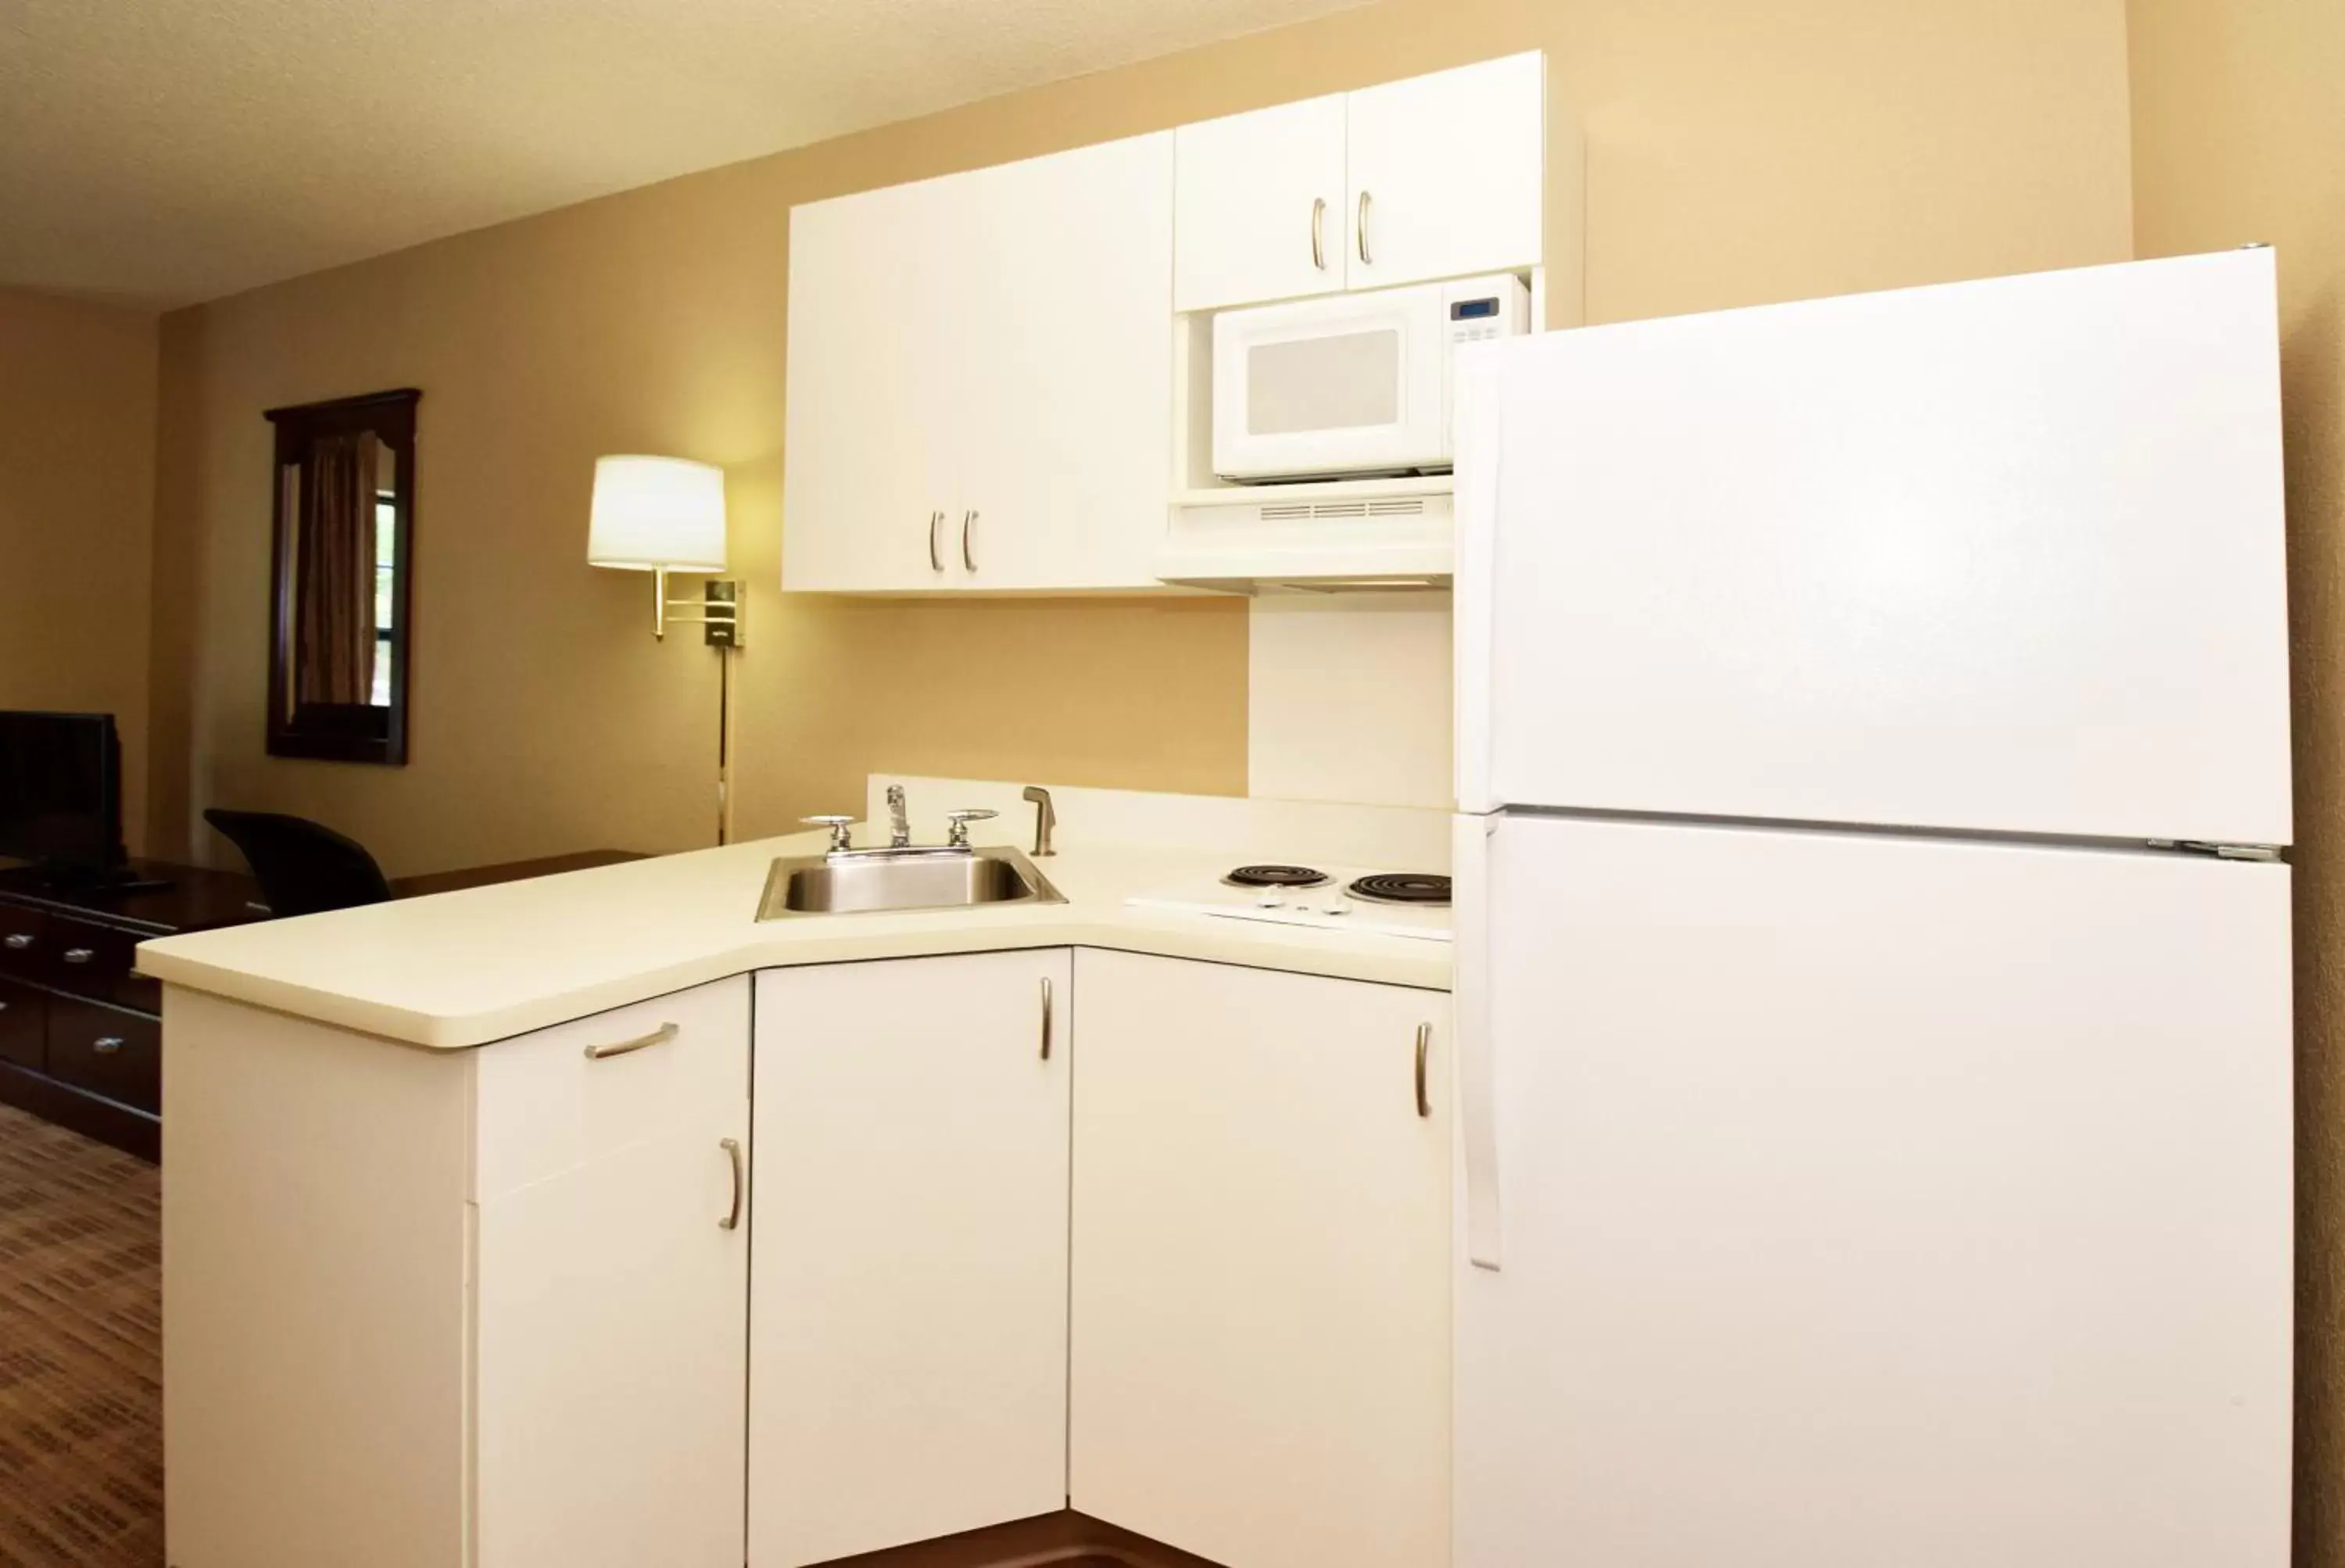 Kitchen or kitchenette, Kitchen/Kitchenette in Extended Stay America Suites - Charleston - Mt Pleasant